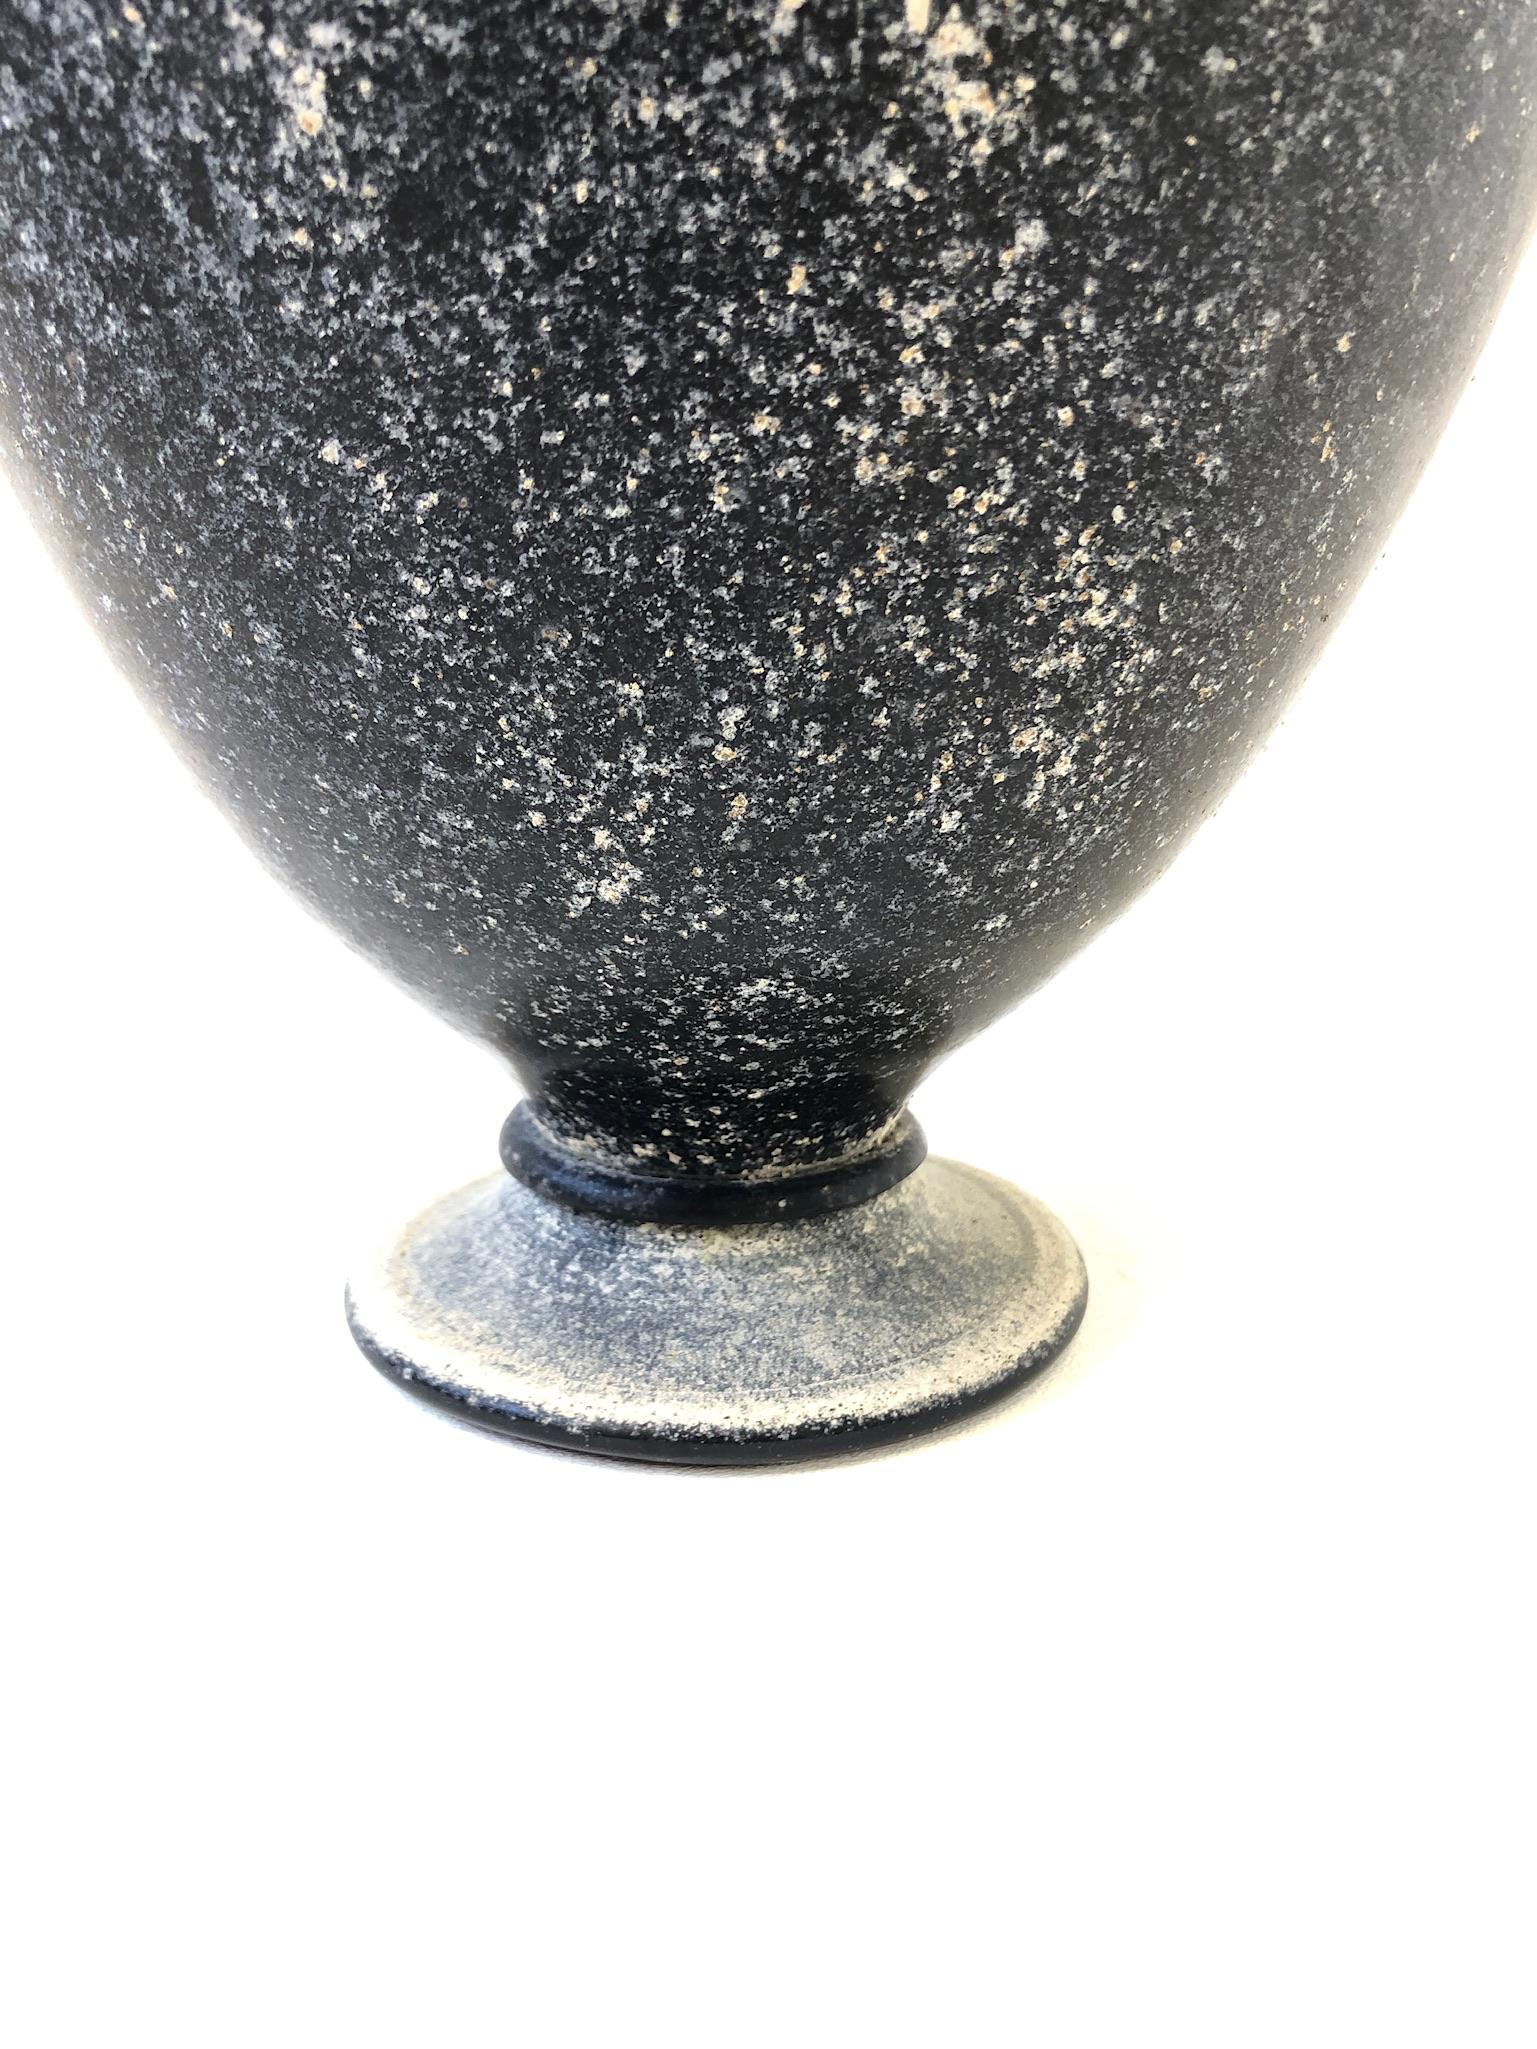 Late 20th Century Italian Scavo Black Murano Glass Vase by Seguso Vetri d’Arte For Sale